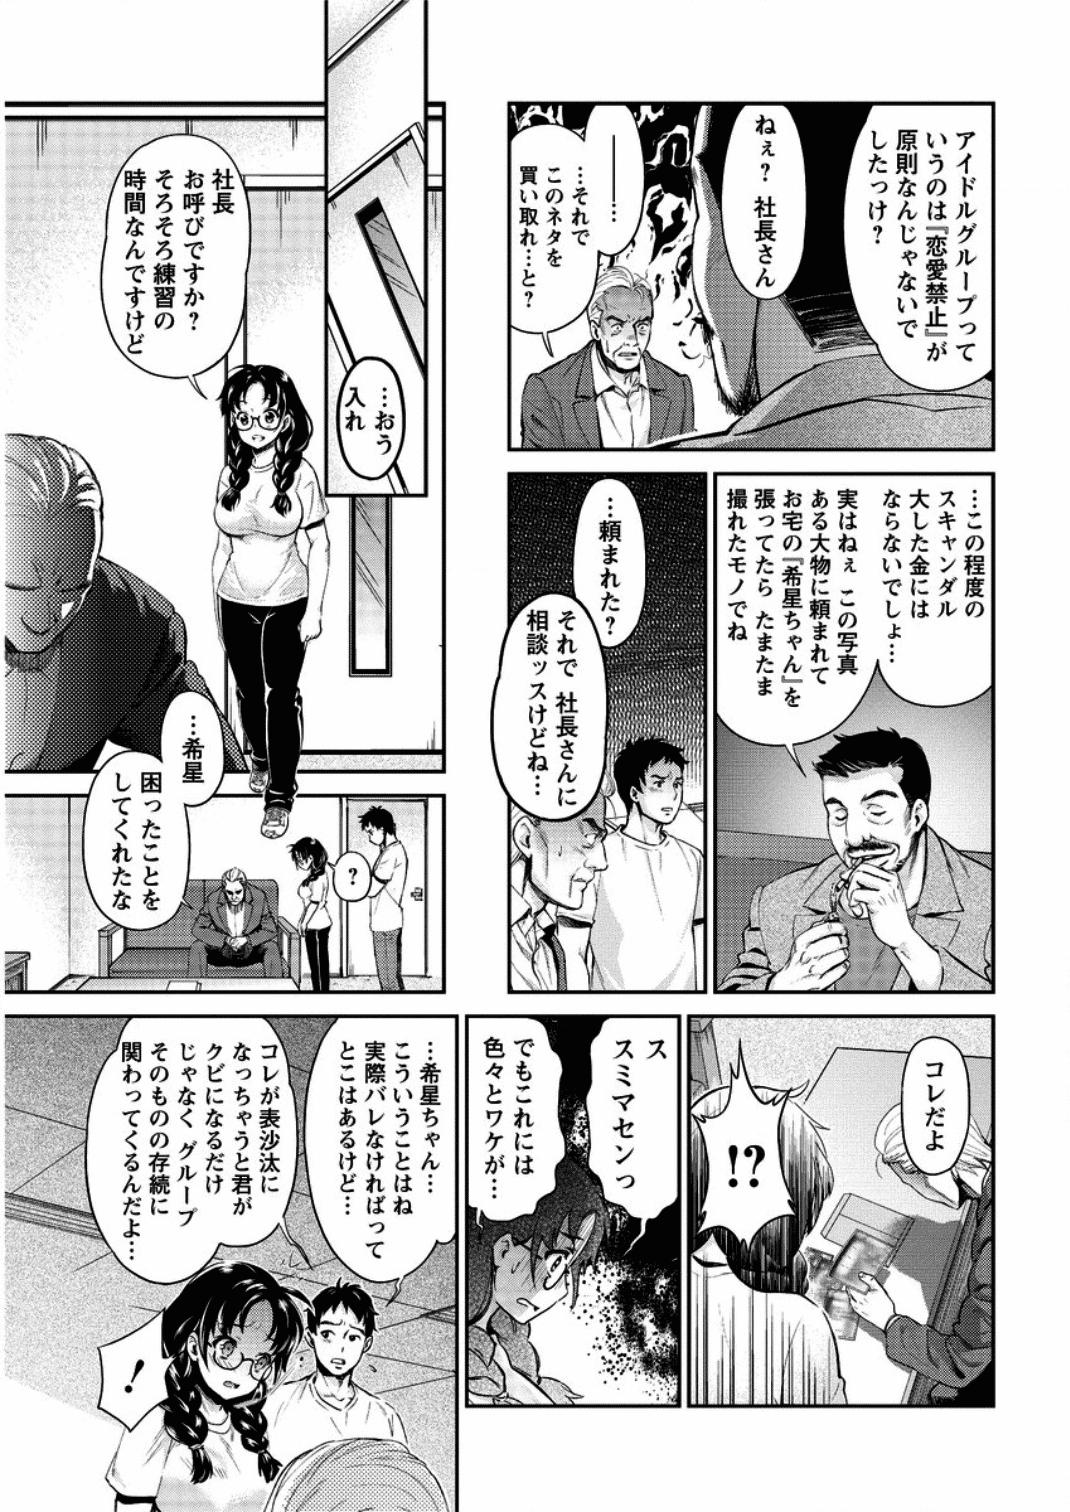 [Umemaru] Idol Densetsu Kirari - Kirari the Grief of Legendary Idol Ch. 1-7 112